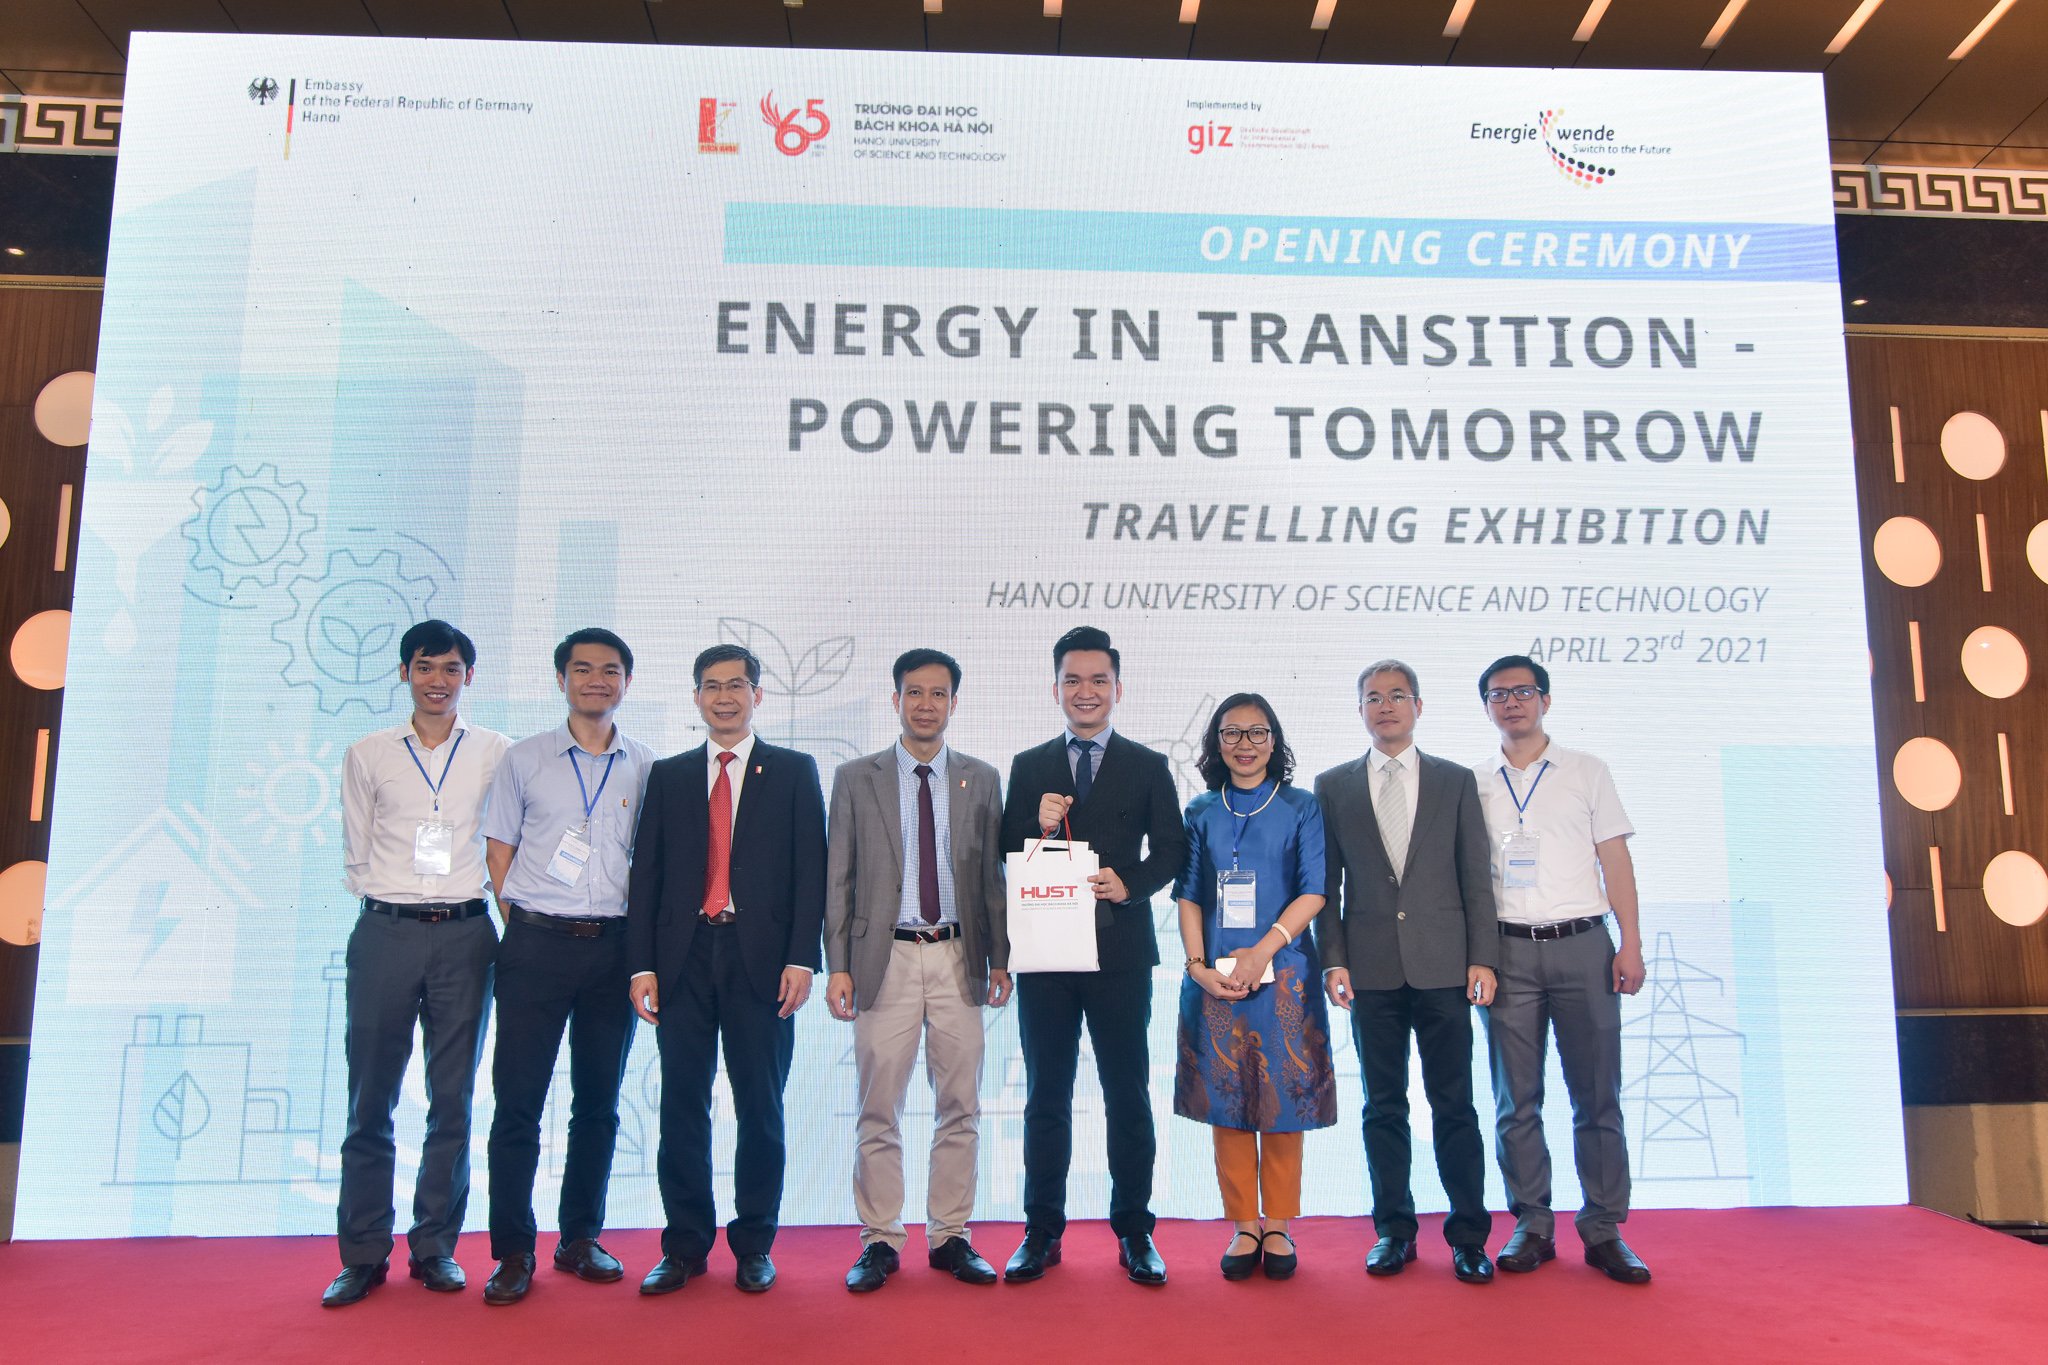 Acht Gäste der Eröffnungszeremonie der Wanderausstellung in Hanoi, Vietnam, stehen auf der Bühne vor einem großen Bildschirm. Auf dem Bildschirm ist der Titel der Ausstellung "Energy in Transition - Powering Tomorrow" geschrieben. April 2021.